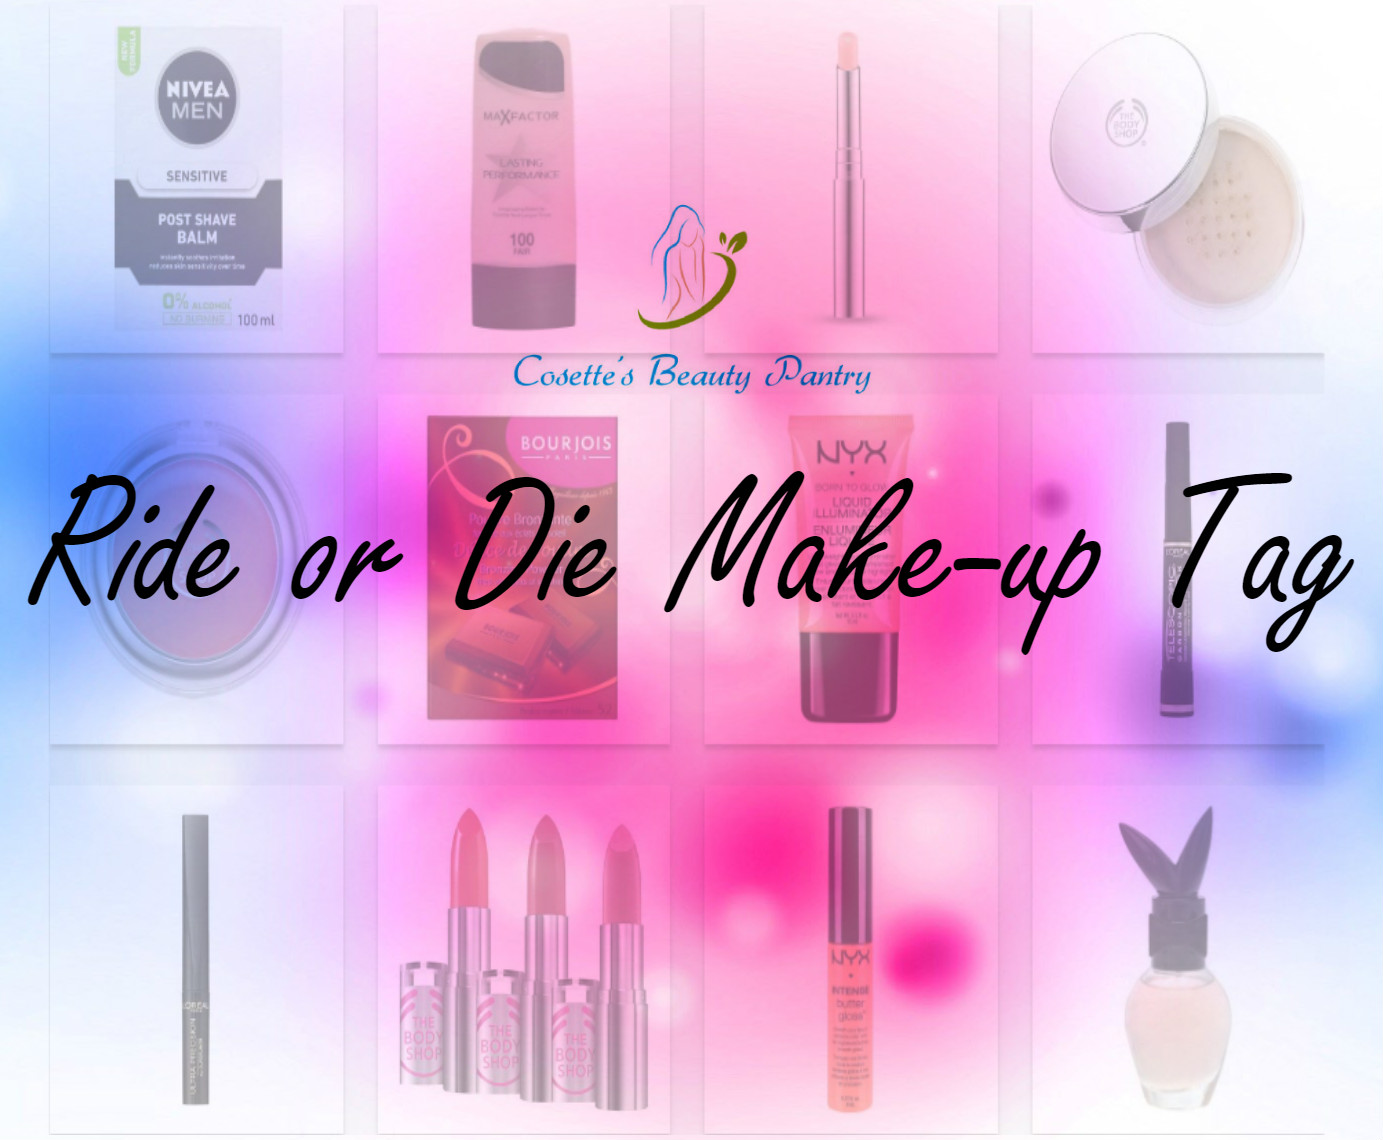  Tag post: Ride or die make-up tag